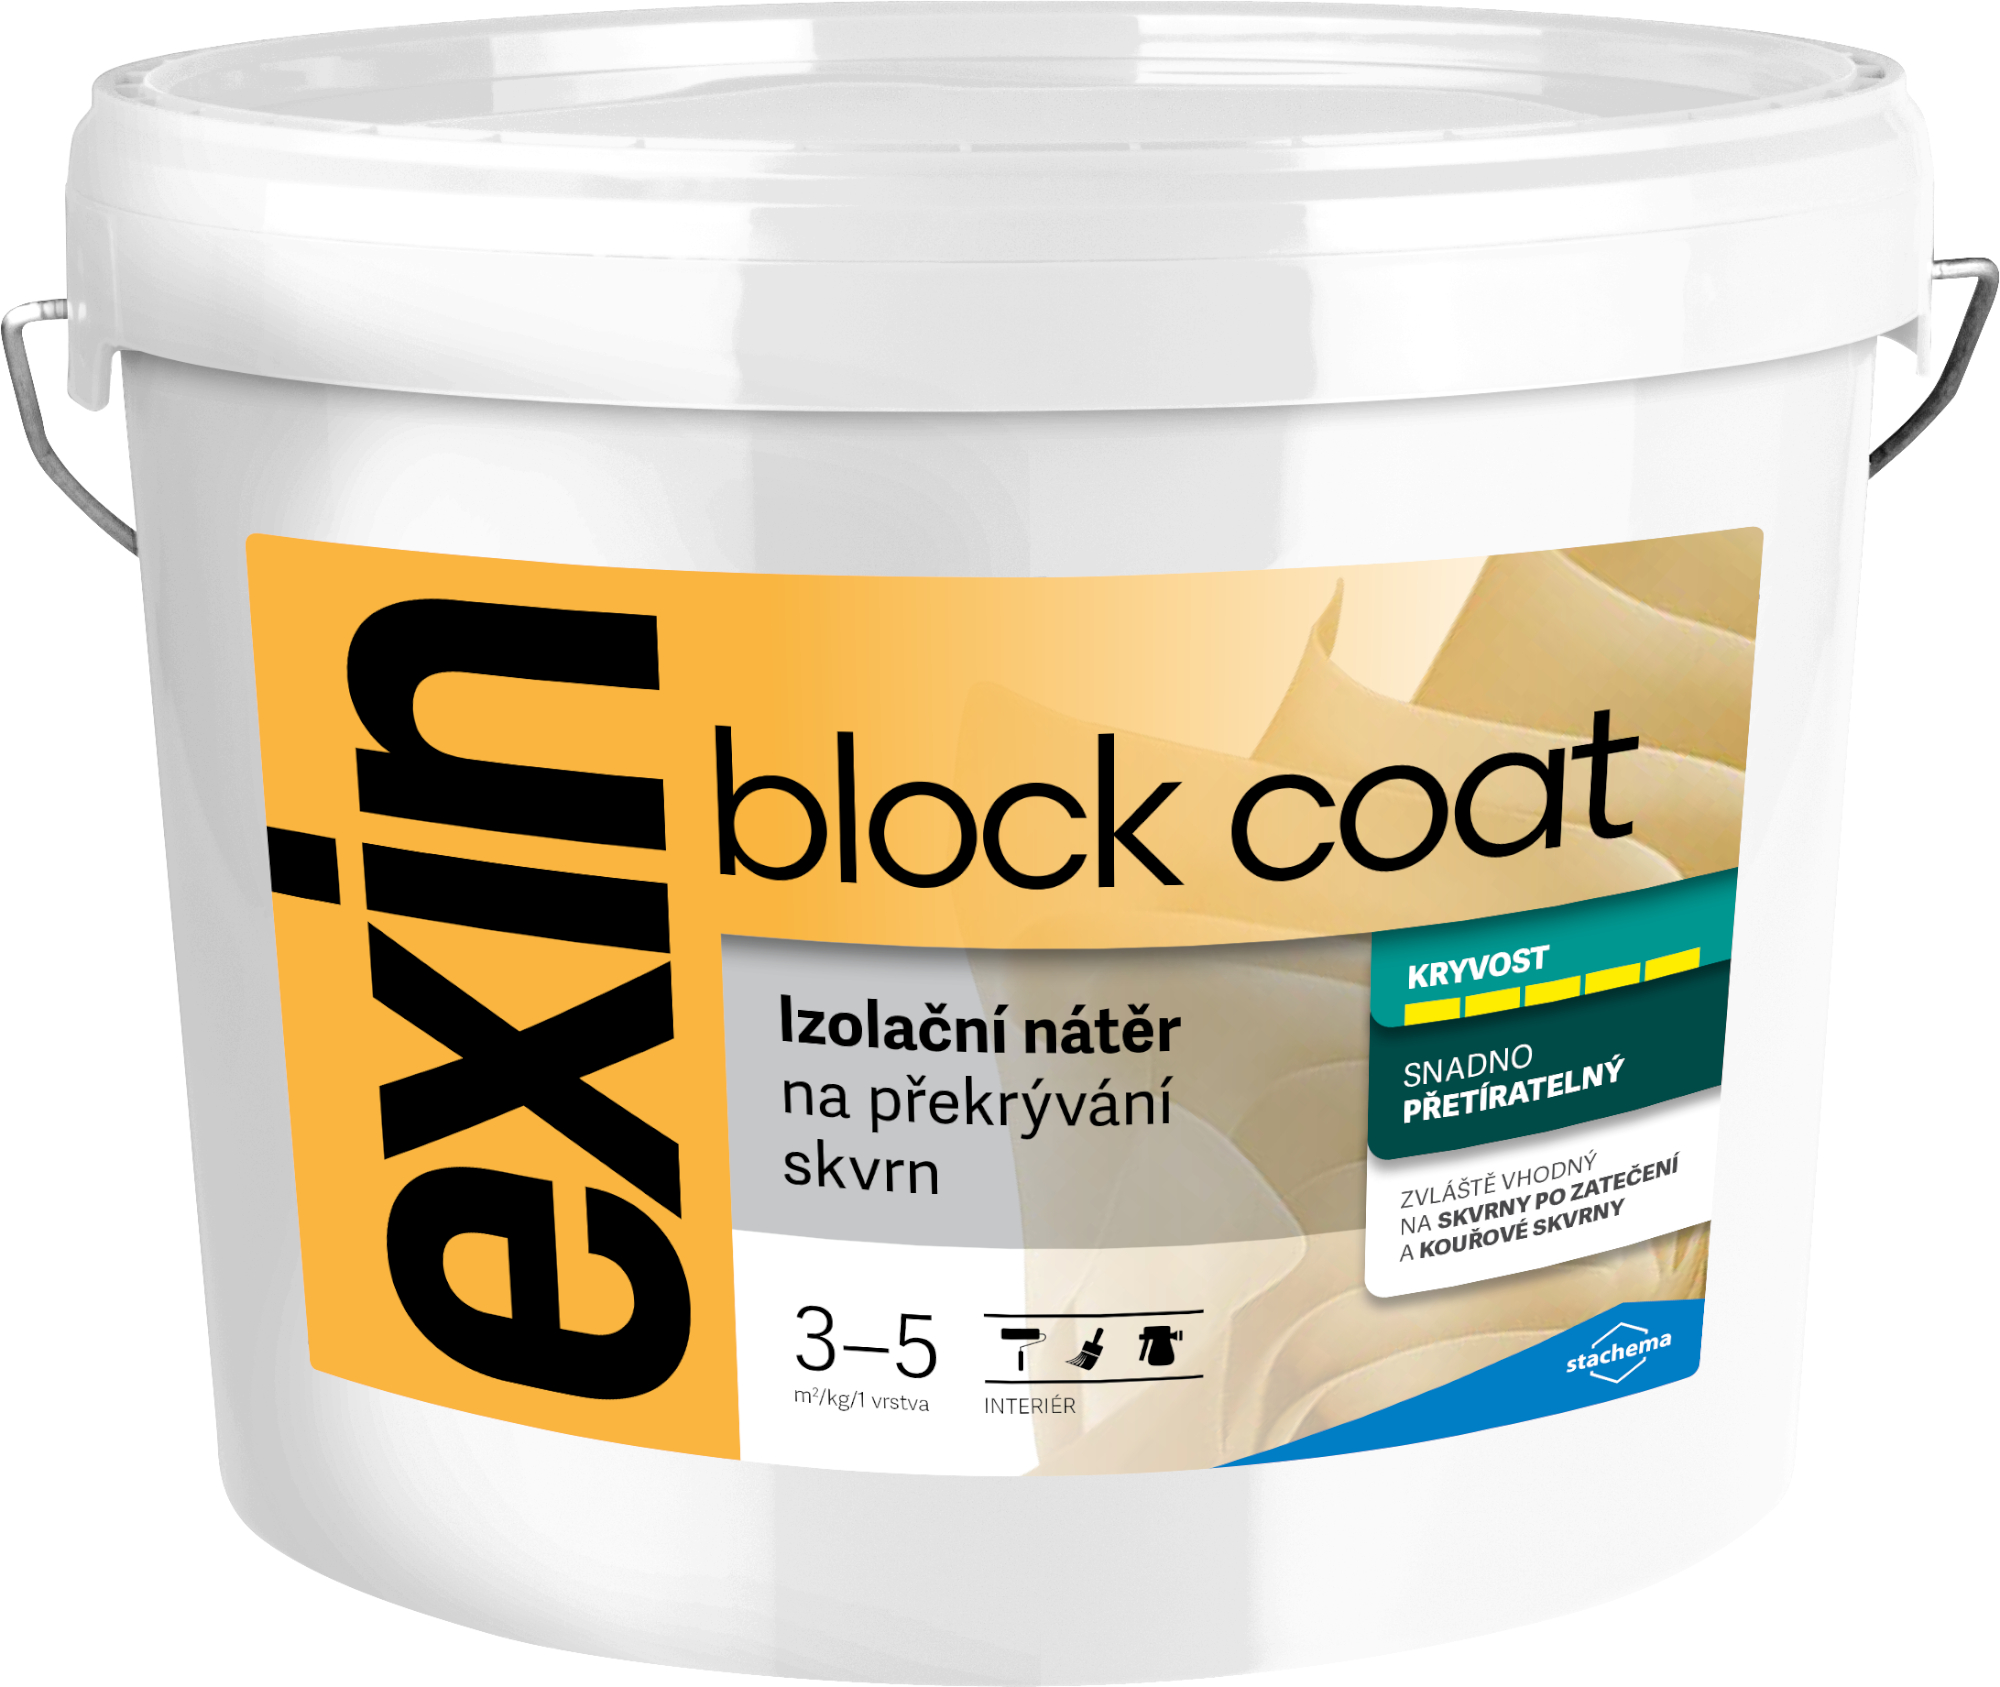 Nátěr k zakrývání skvrn Stachema Exin Block Coat bílá, 7 kg